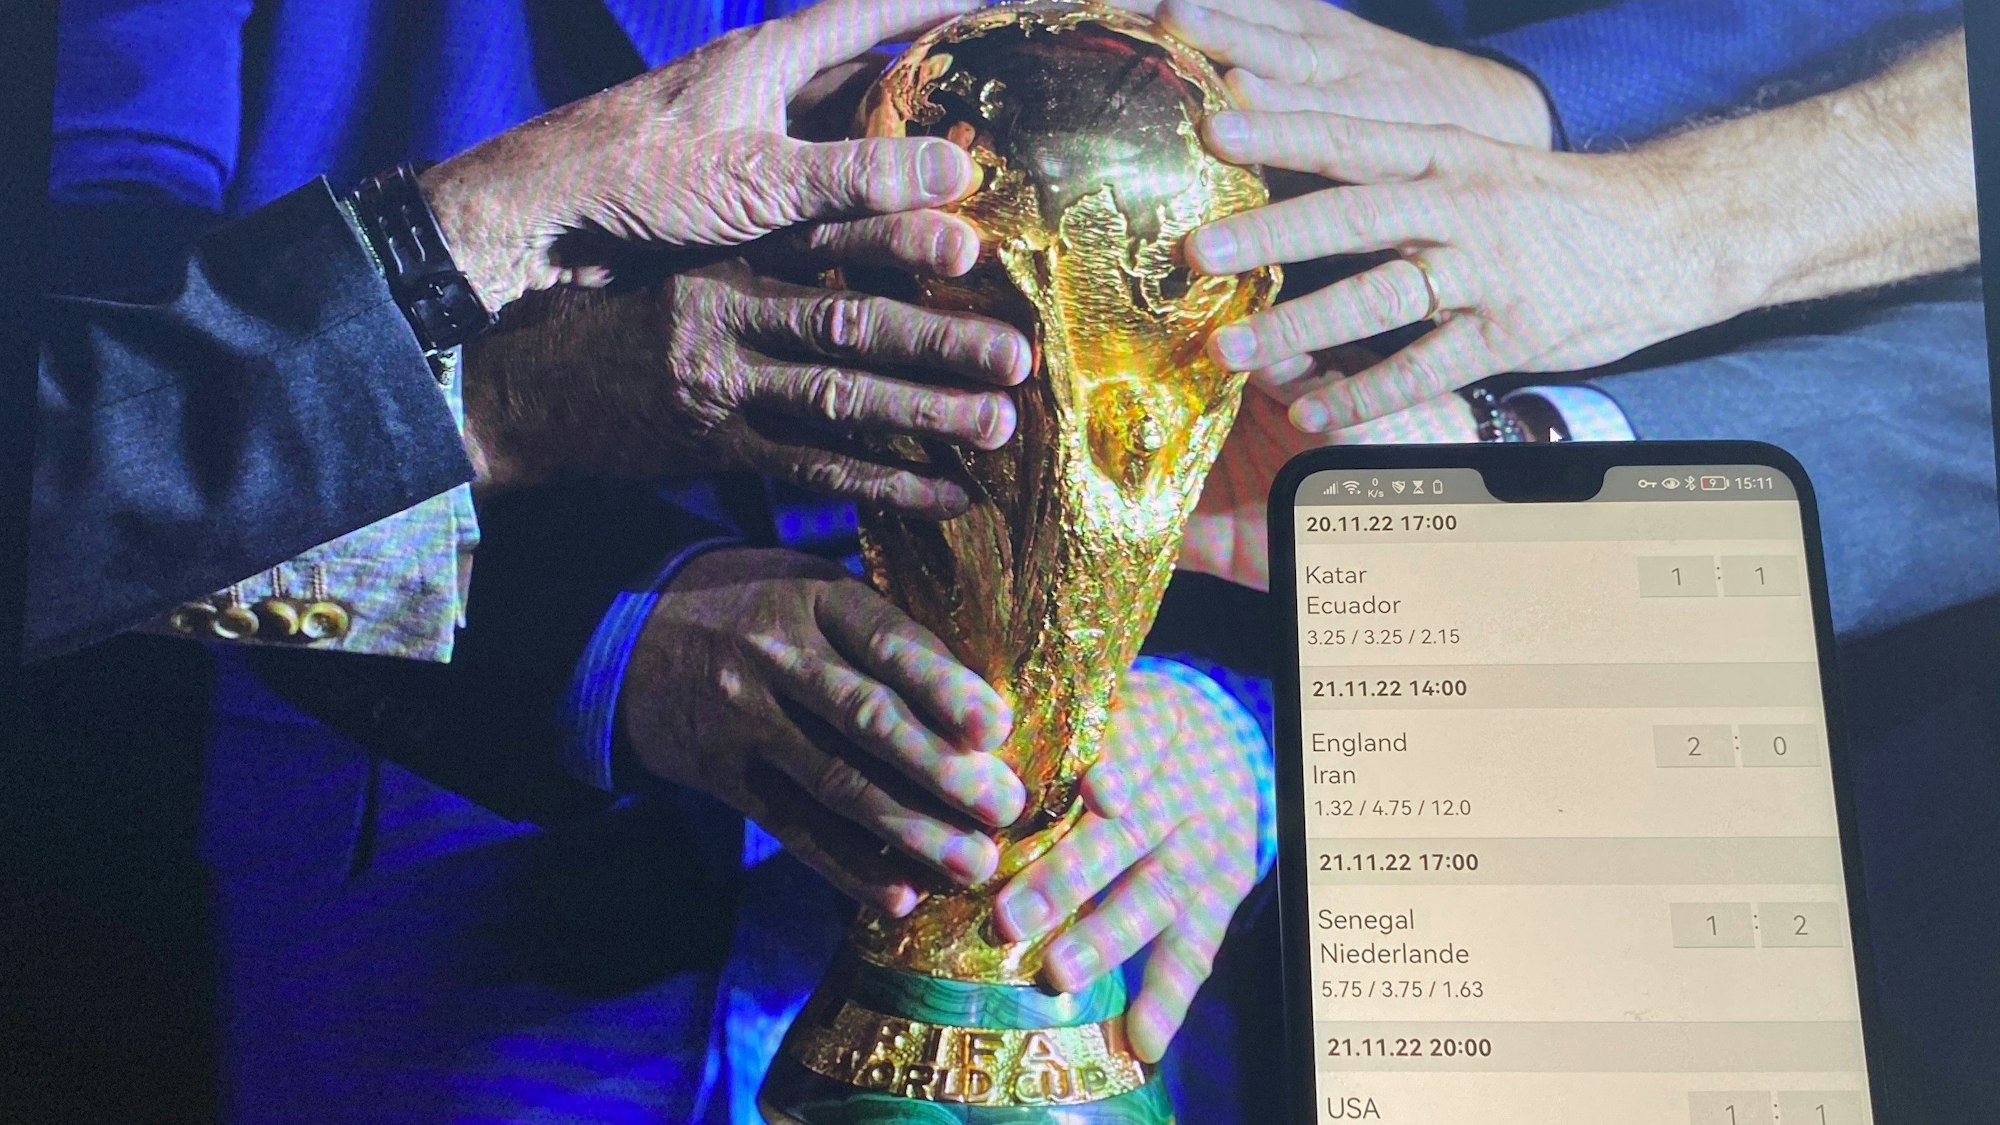 Im Hintergrund halten viele Menschen ihre Hände an den WM-Pokal, im Vordergrund ist auf einem Handy eine Tippspiel-App geöffnet